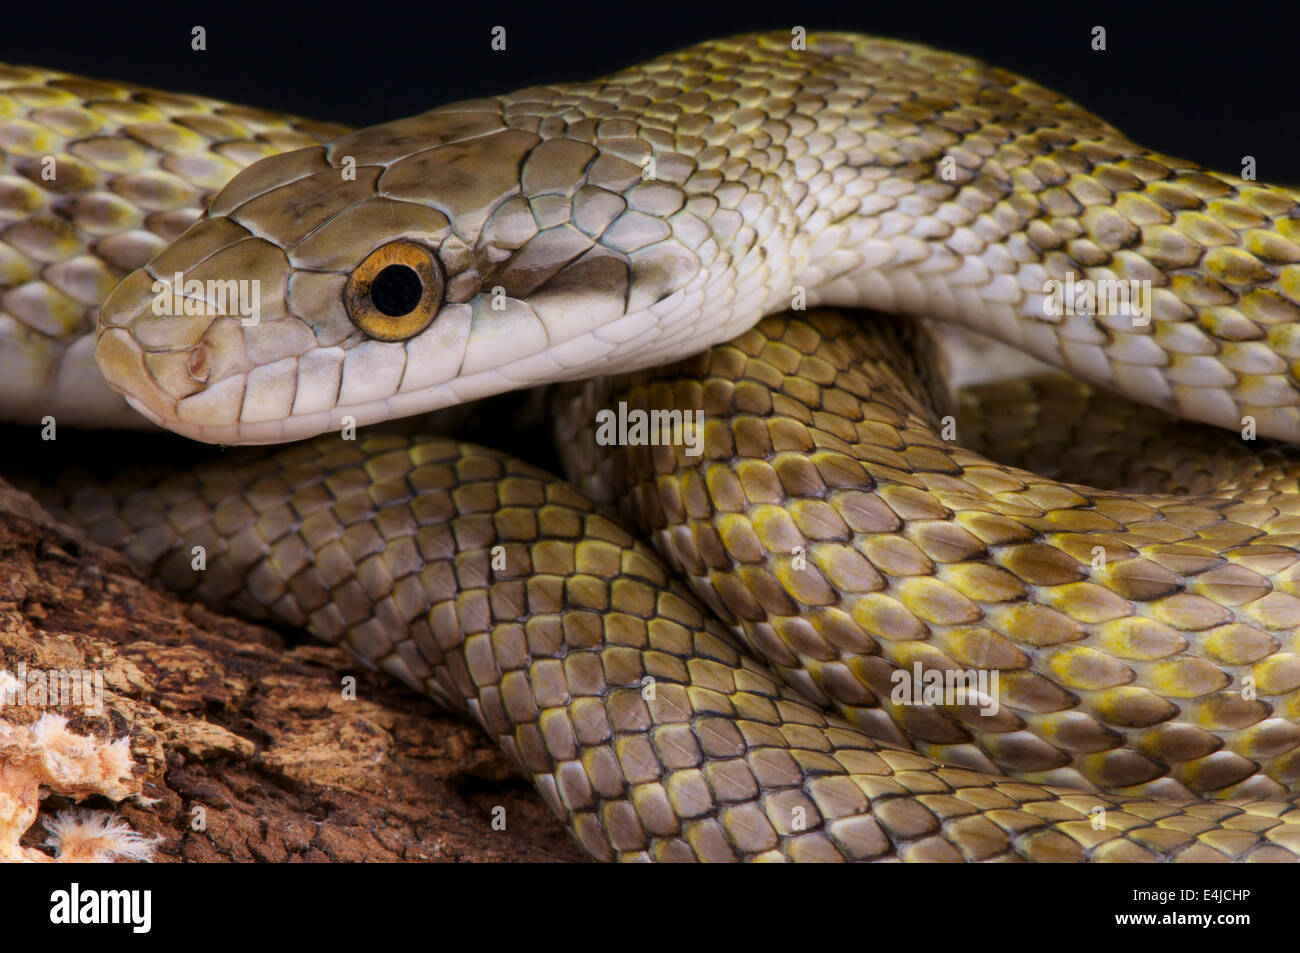 Japanese rat snake / Elaphe climacophora Stock Photo